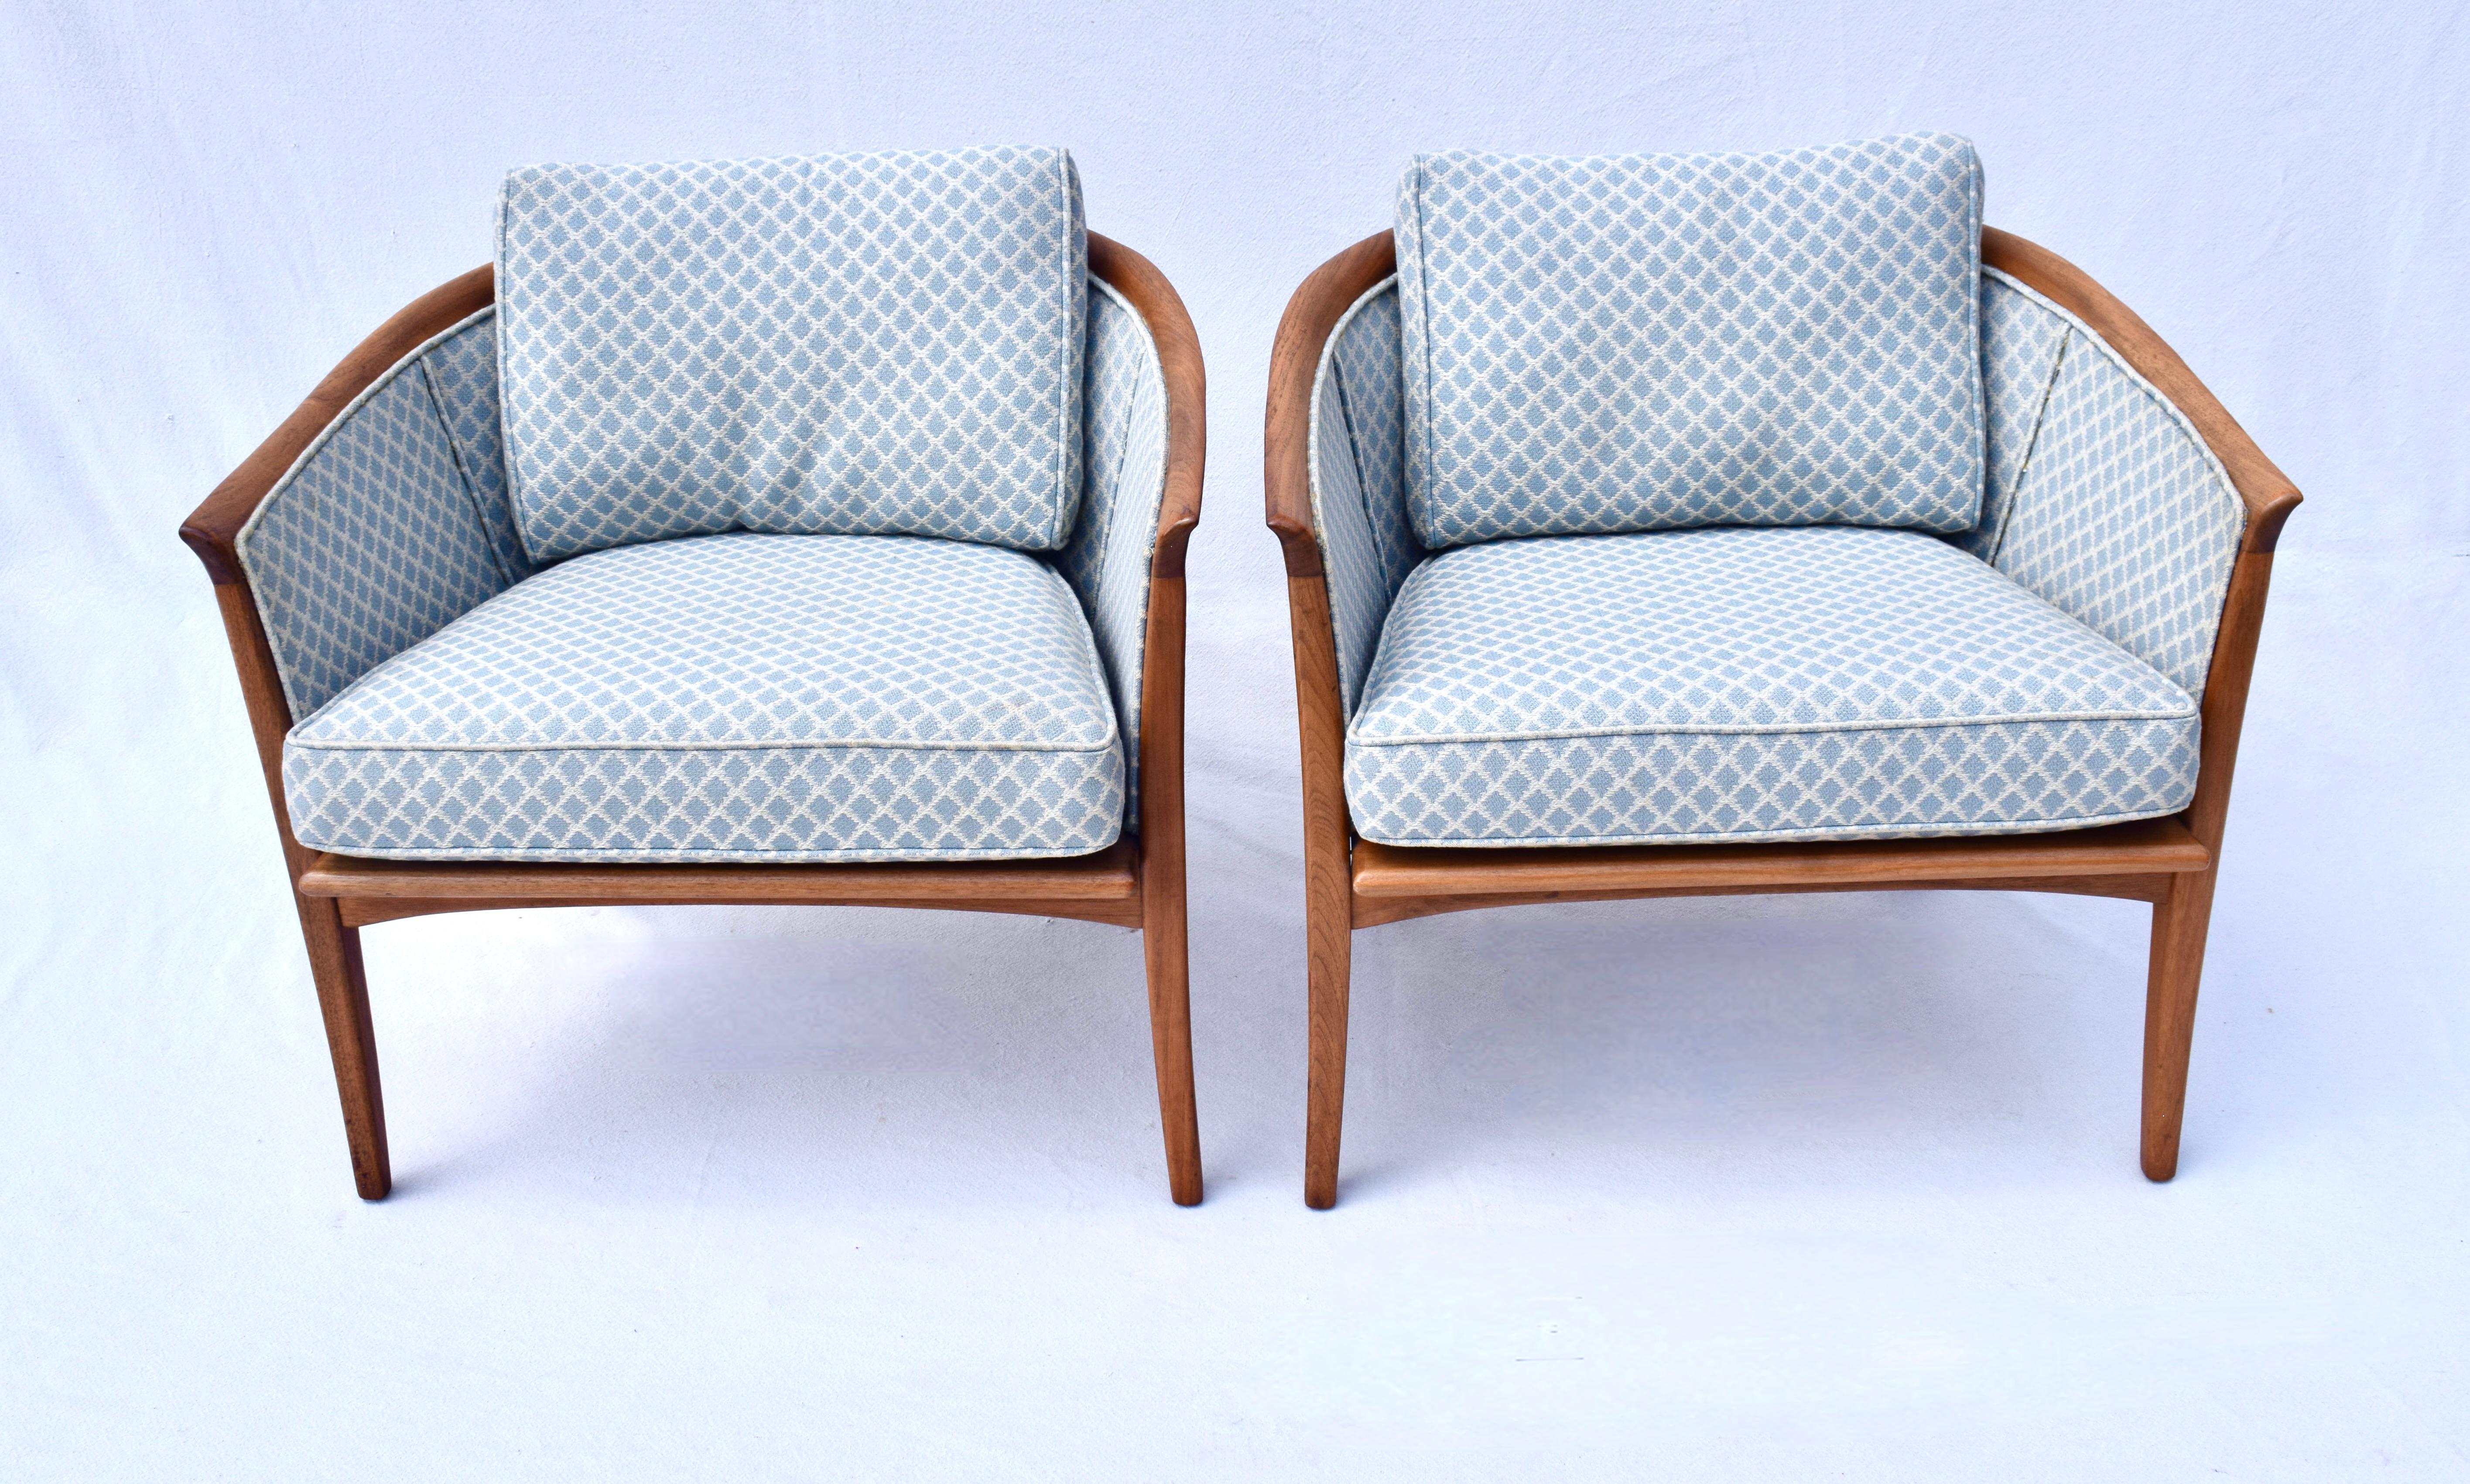 Seltene Mid-Century Modern Milo Baughman Thayer Coggin Barrel zurück Walnuss Club Lounge Stühle in allen ursprünglichen blauen und weißen Spalier Brokat gepolstert gesehen. Sitz: 17